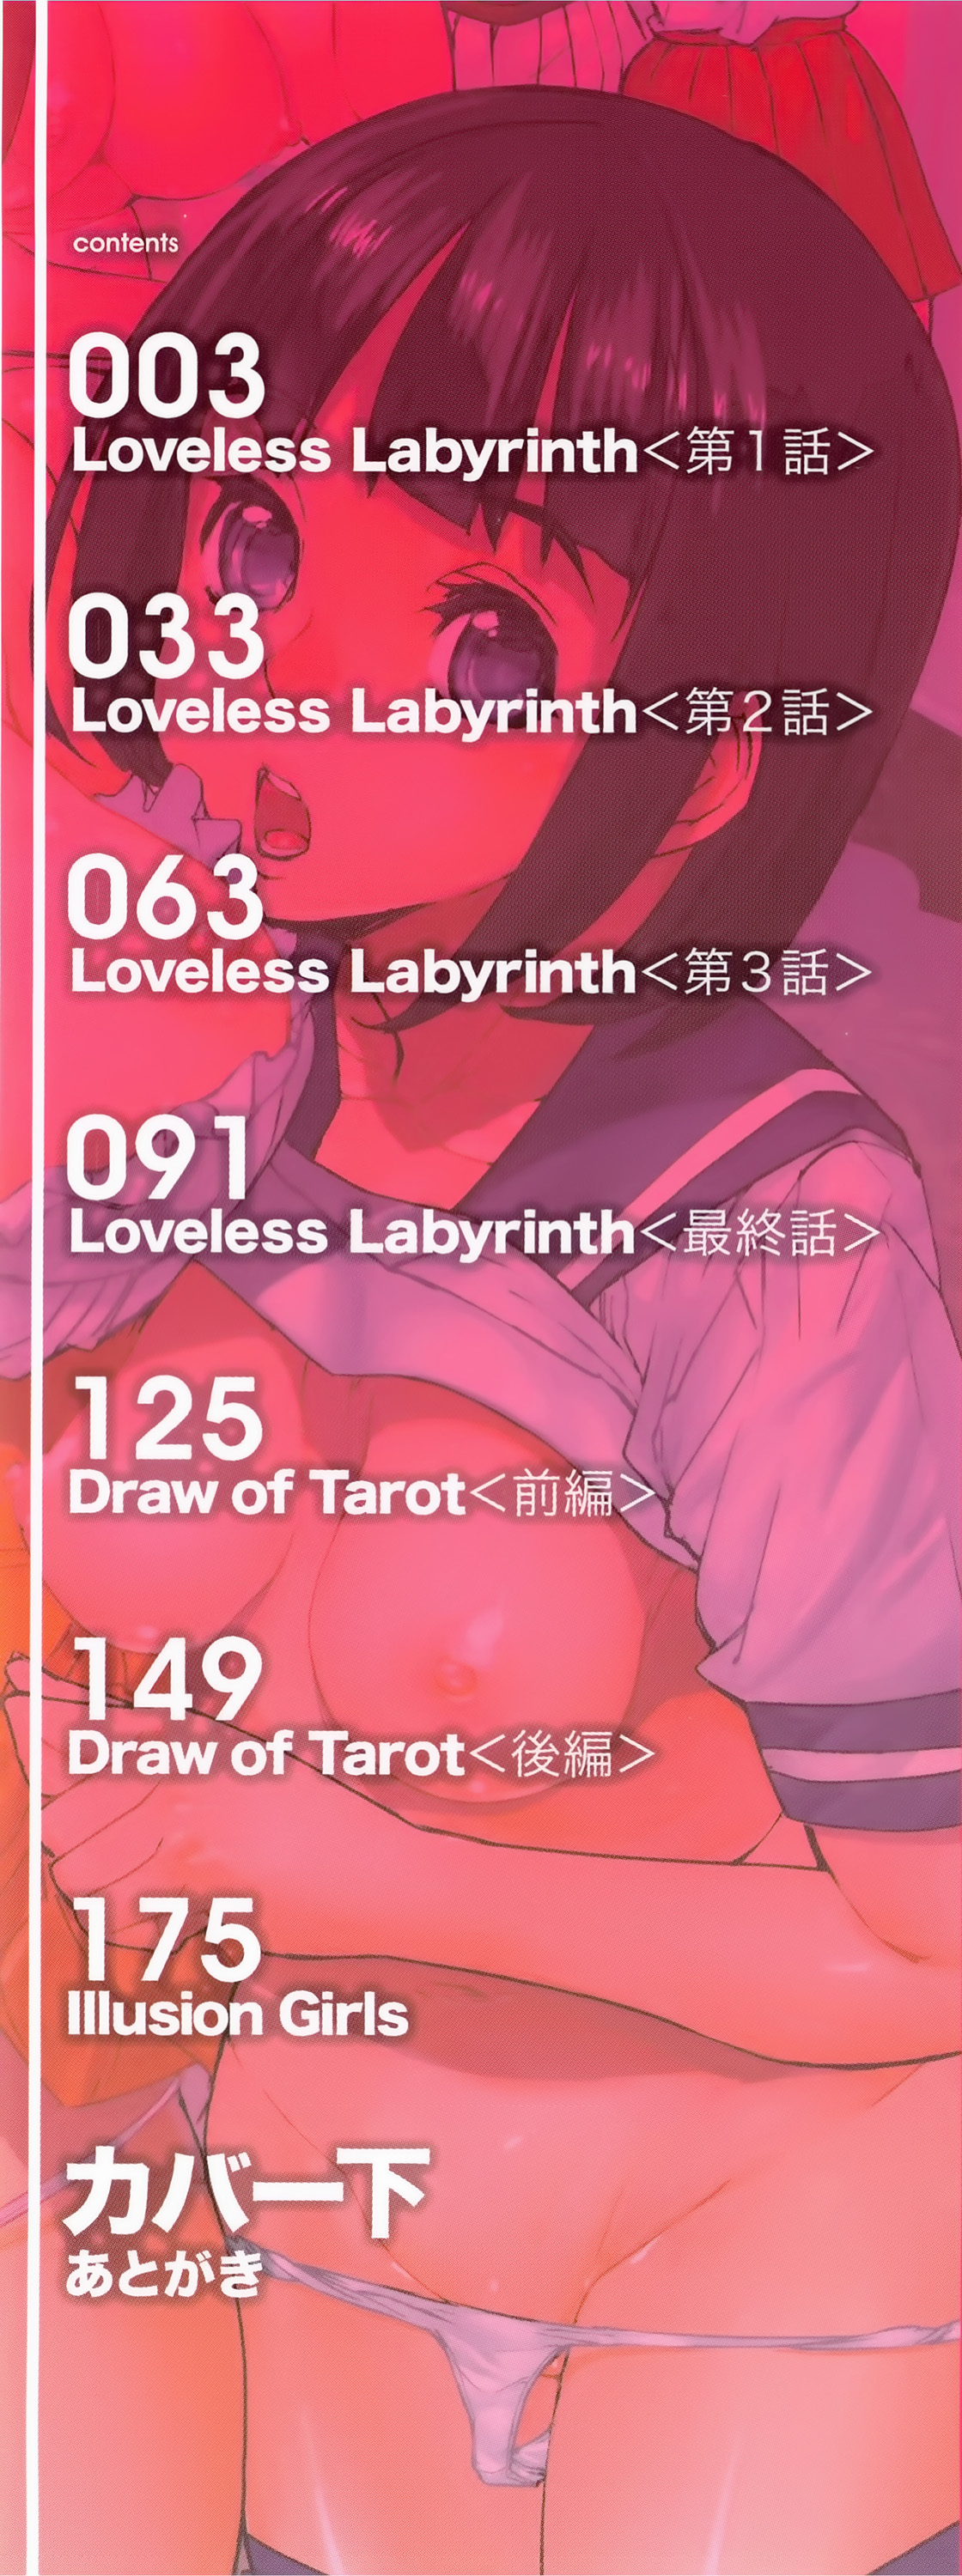 [Ashiomi Masato] Loveless Labyrinth [アシオミマサト] Loveless Labyrinth + メッセージペーパー, 複製原画